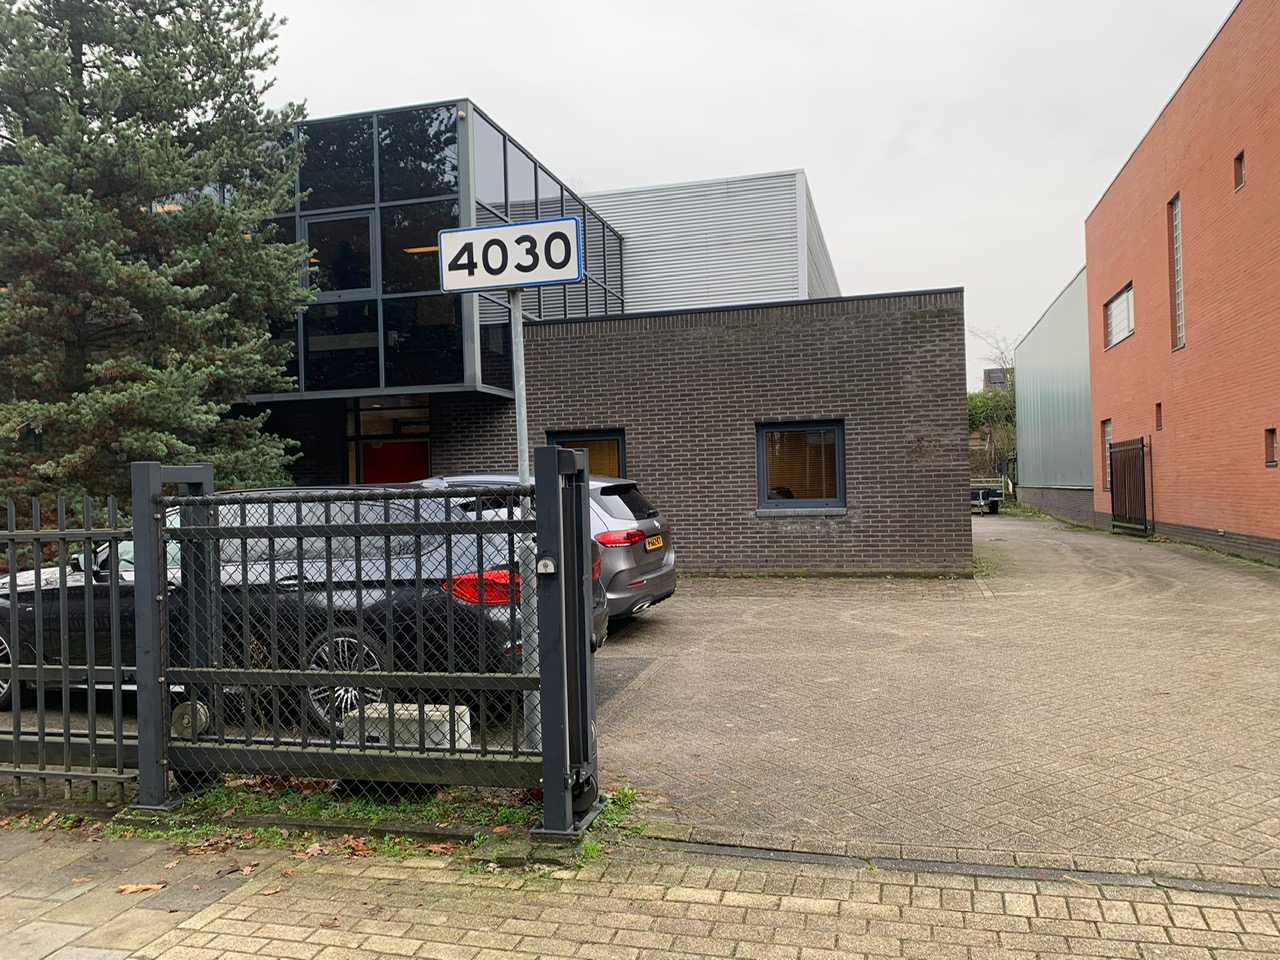 Bedrijfsruimte aan de Boschdijk in Eindhoven verhuurd!